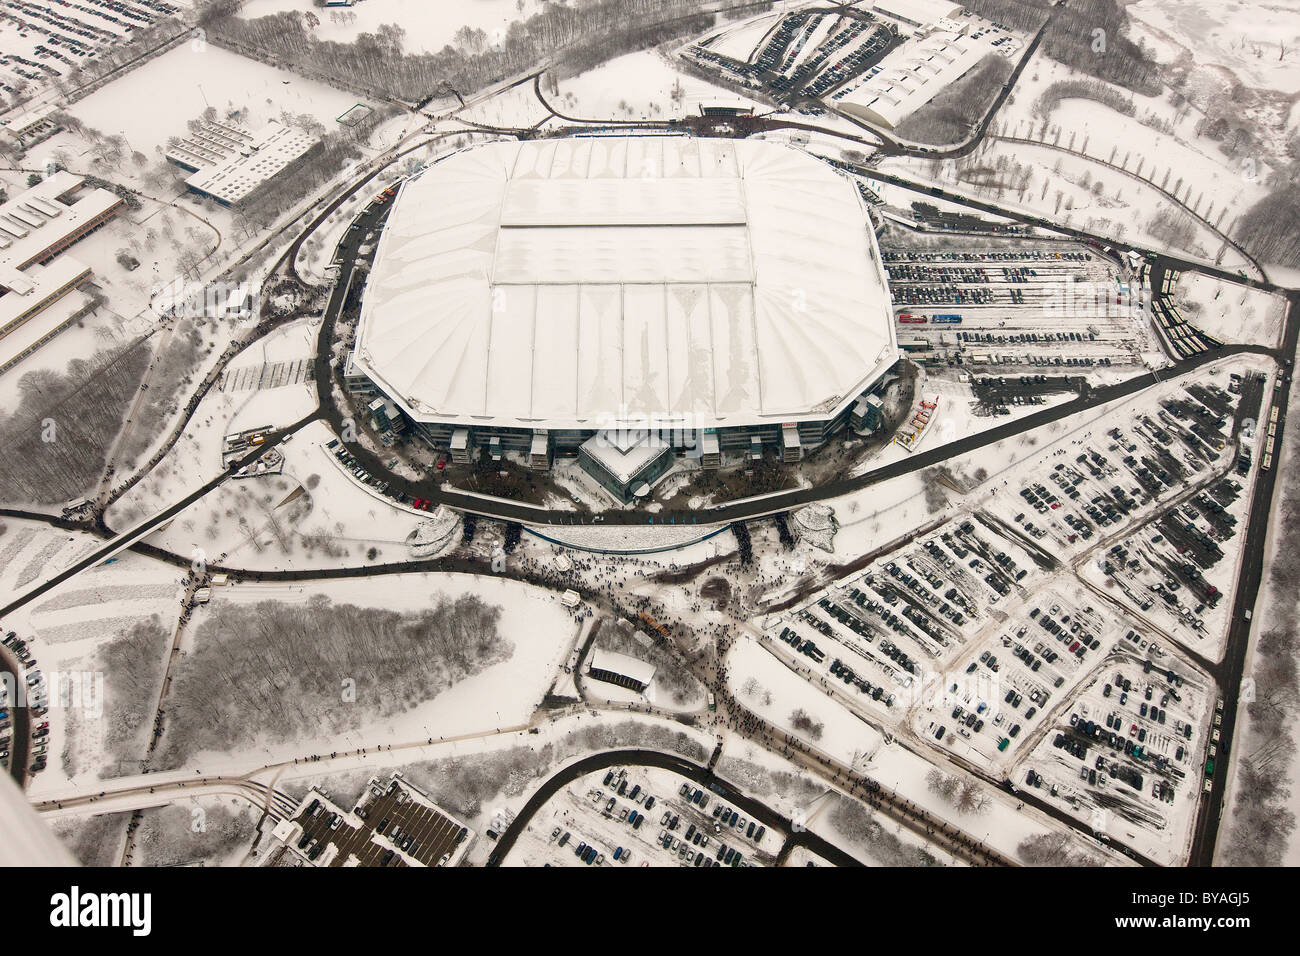 Vue aérienne, Schalke Arena, Veltins-Arena, avant que le toit a été endommagé par la neige, Gelsenkirchen, région de la Ruhr Banque D'Images